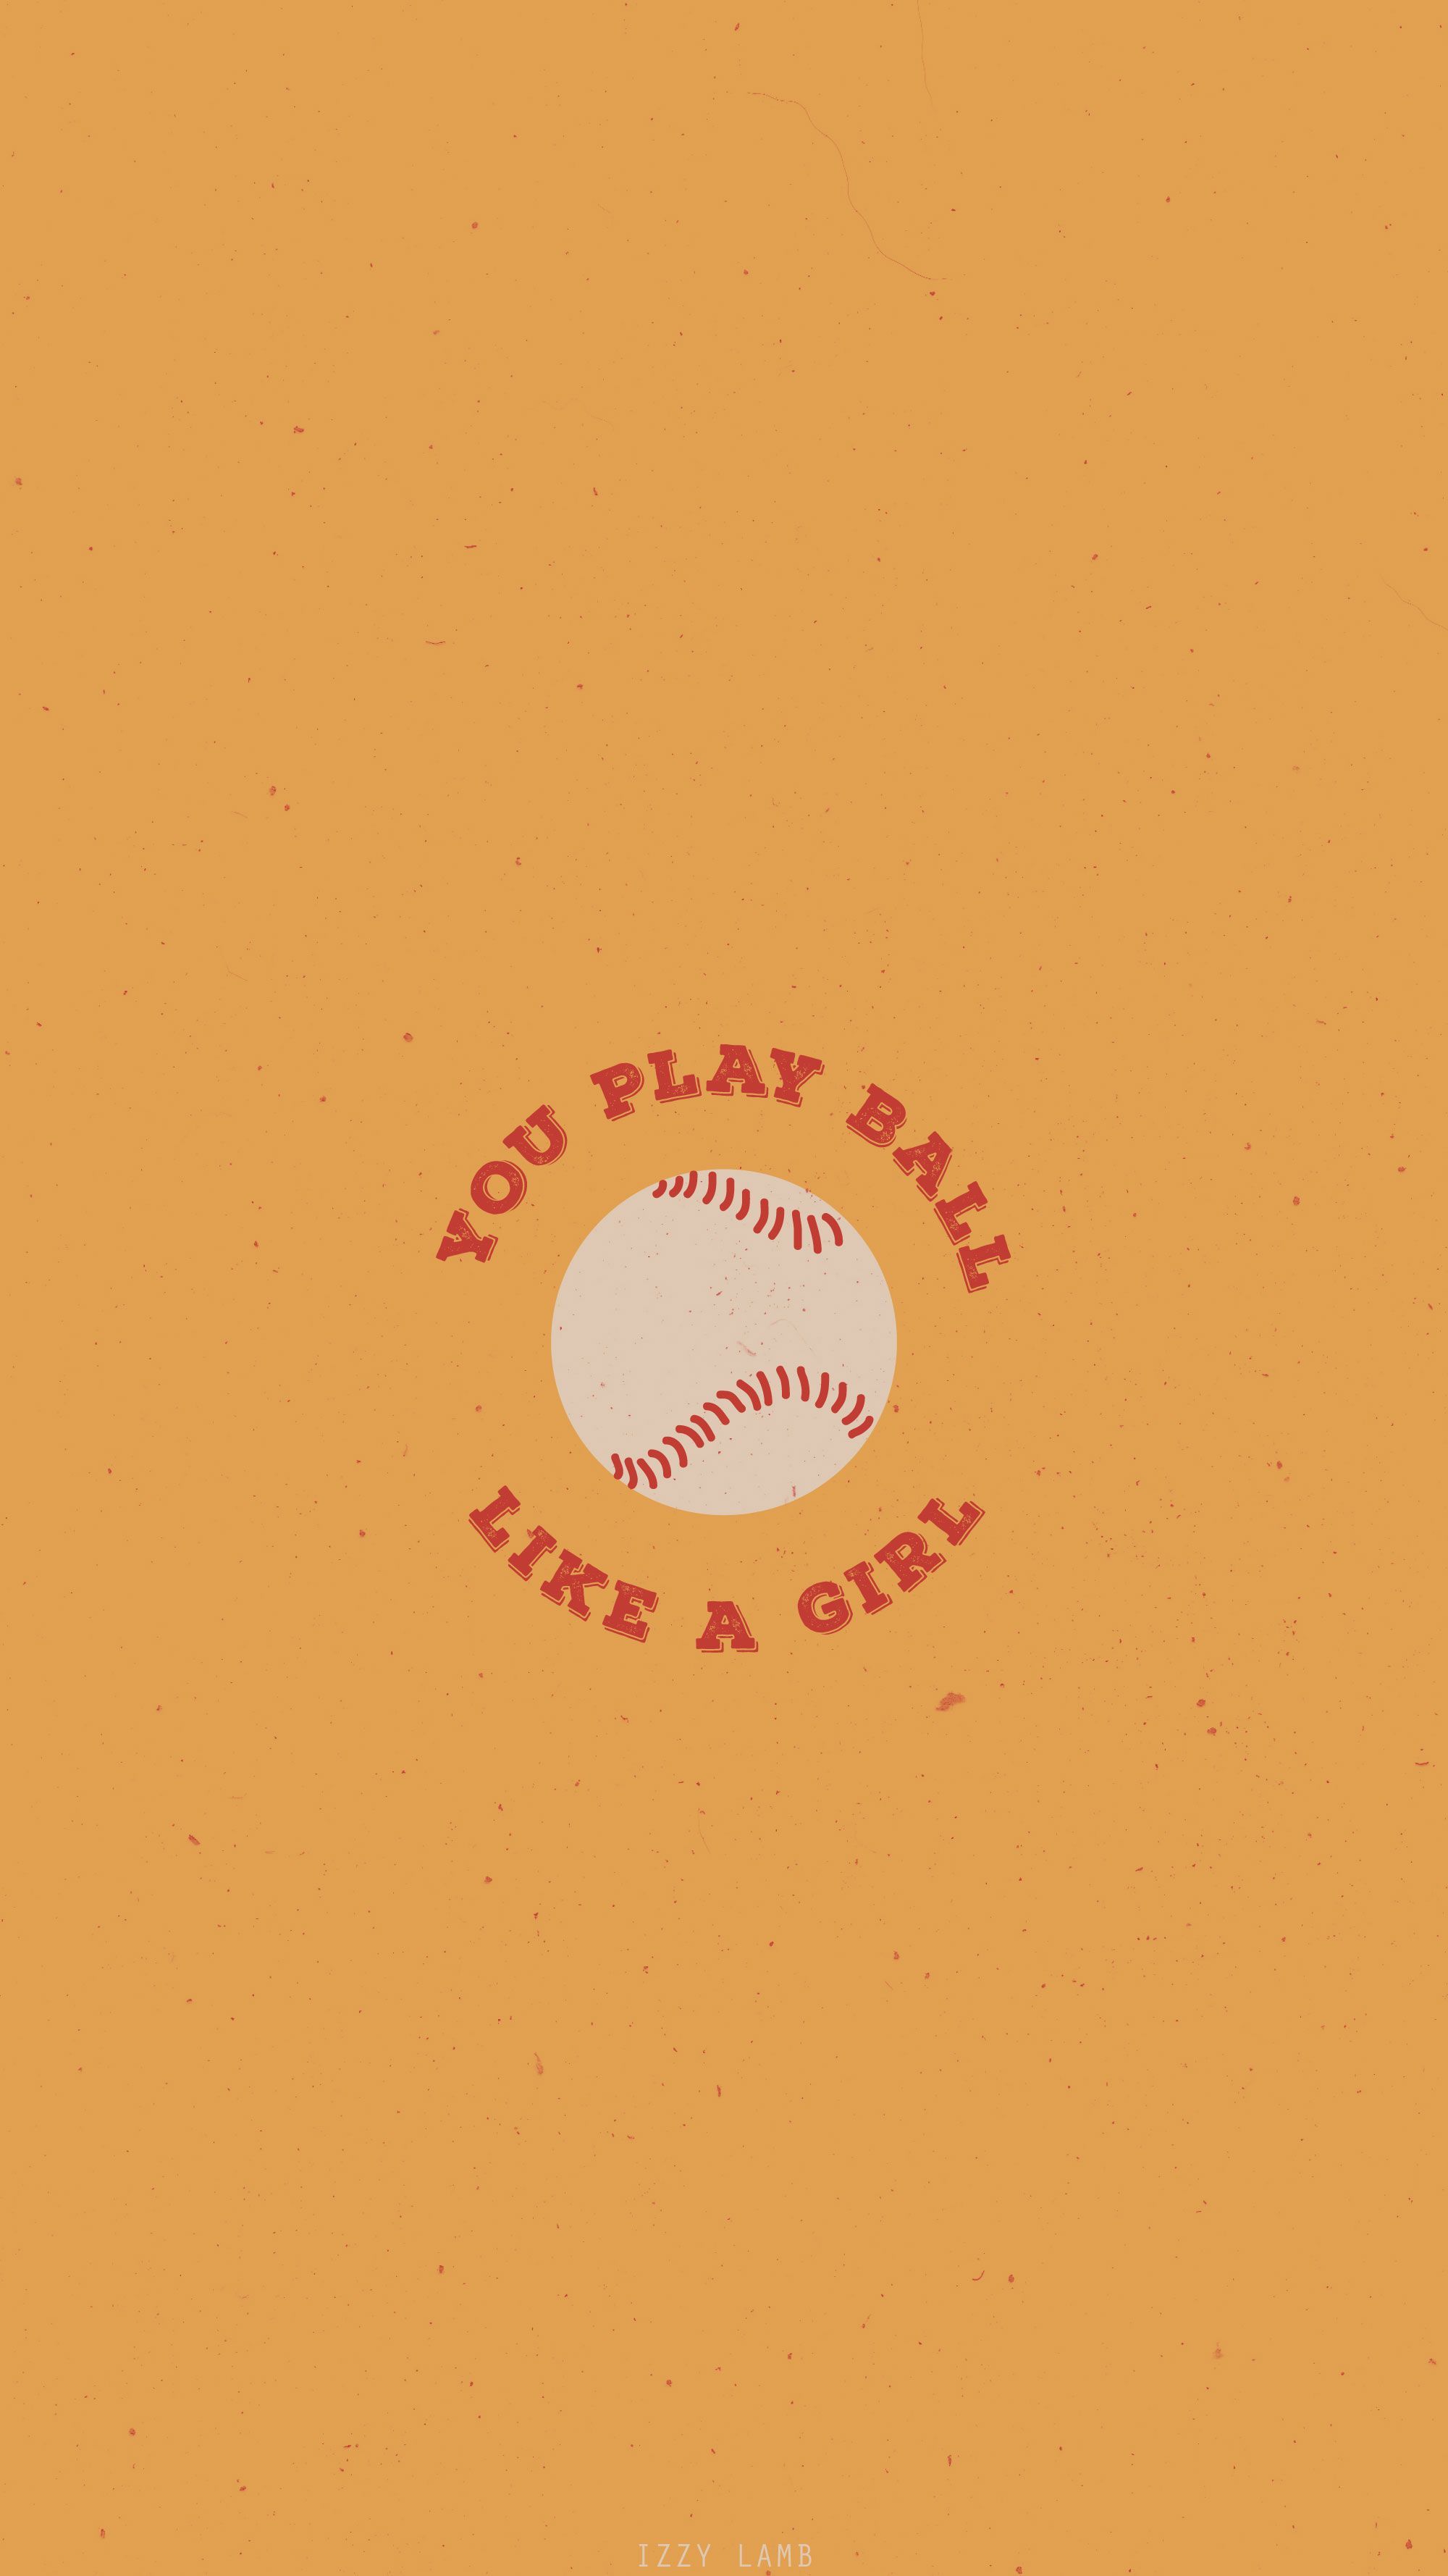 A poster that says you play ball like girl - Softball